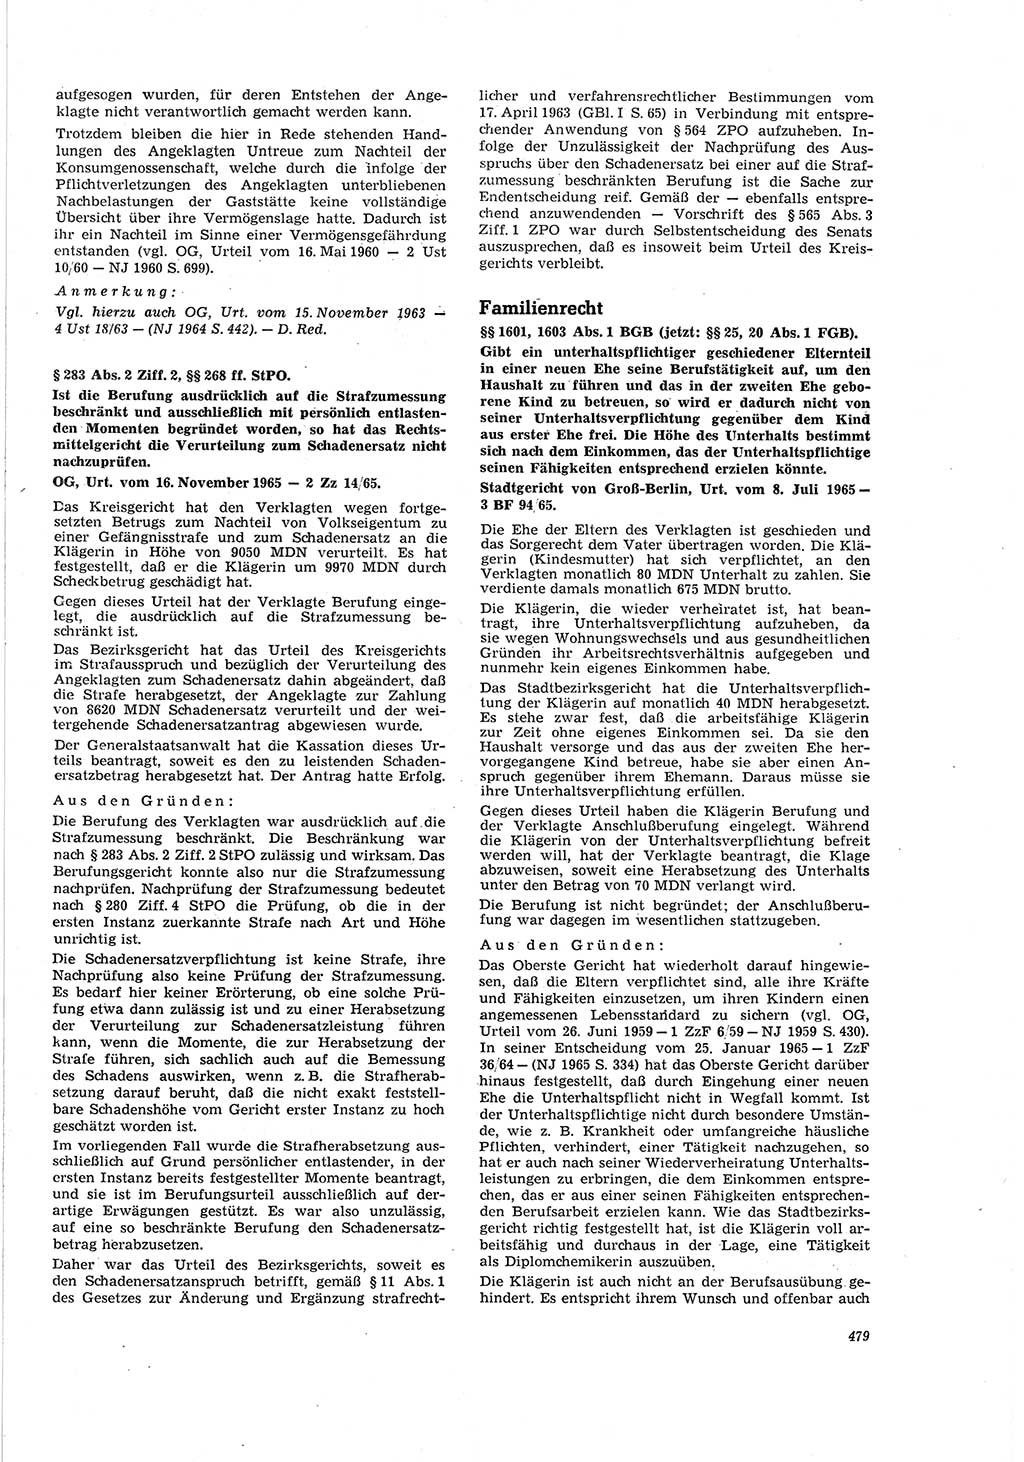 Neue Justiz (NJ), Zeitschrift für Recht und Rechtswissenschaft [Deutsche Demokratische Republik (DDR)], 20. Jahrgang 1966, Seite 479 (NJ DDR 1966, S. 479)